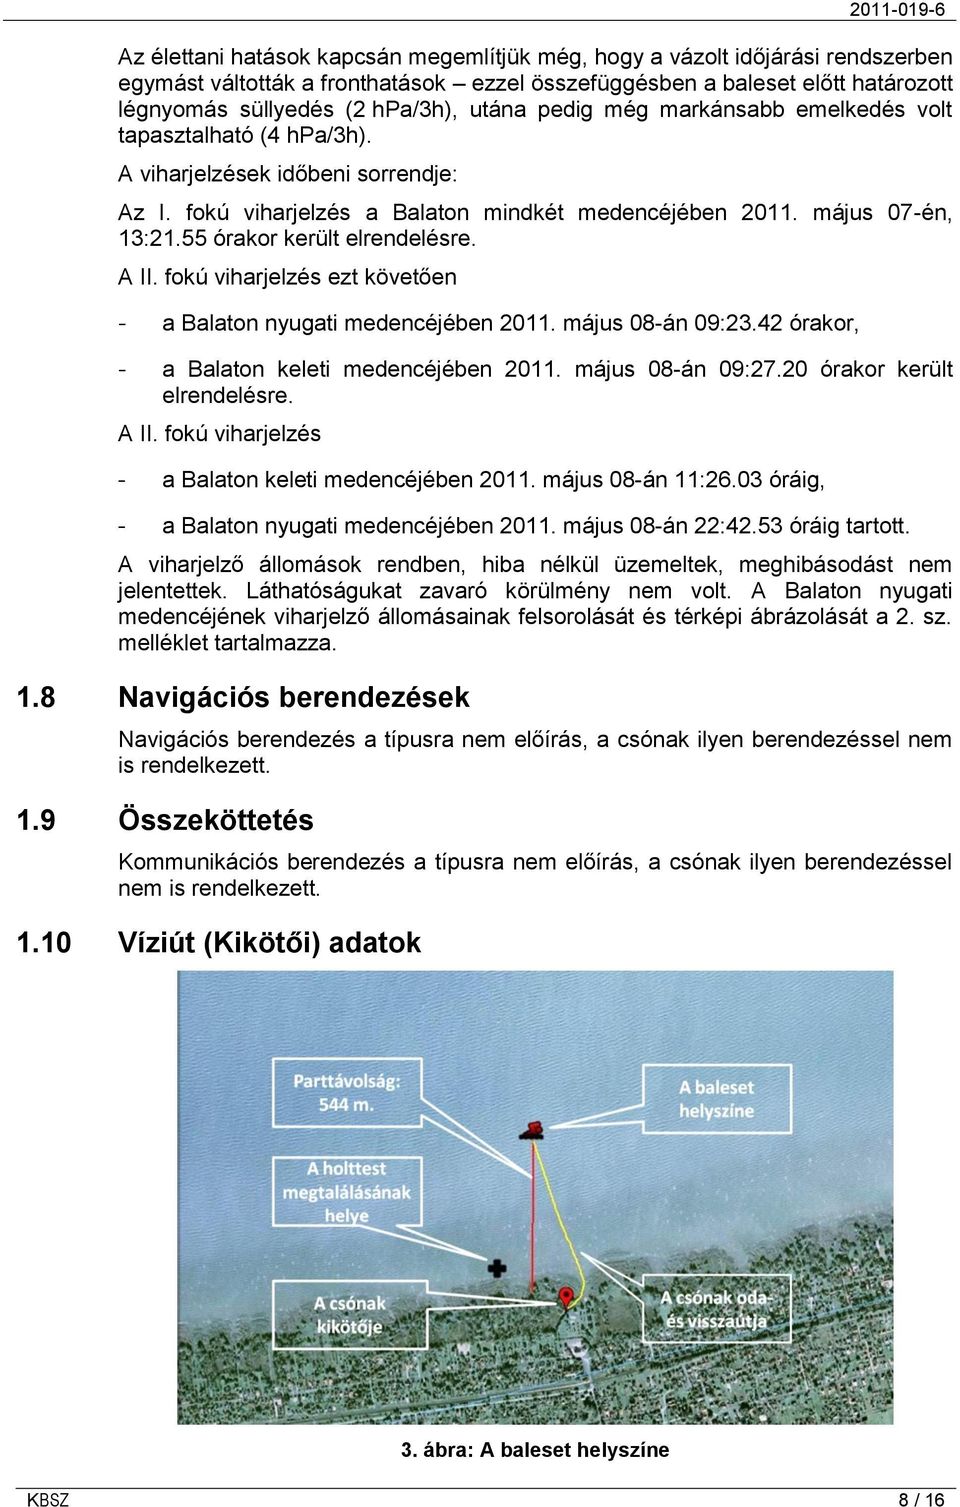 55 órakor került elrendelésre. A II. fokú viharjelzés ezt követően - a Balaton nyugati medencéjében 2011. május 08-án 09:23.42 órakor, - a Balaton keleti medencéjében 2011. május 08-án 09:27.